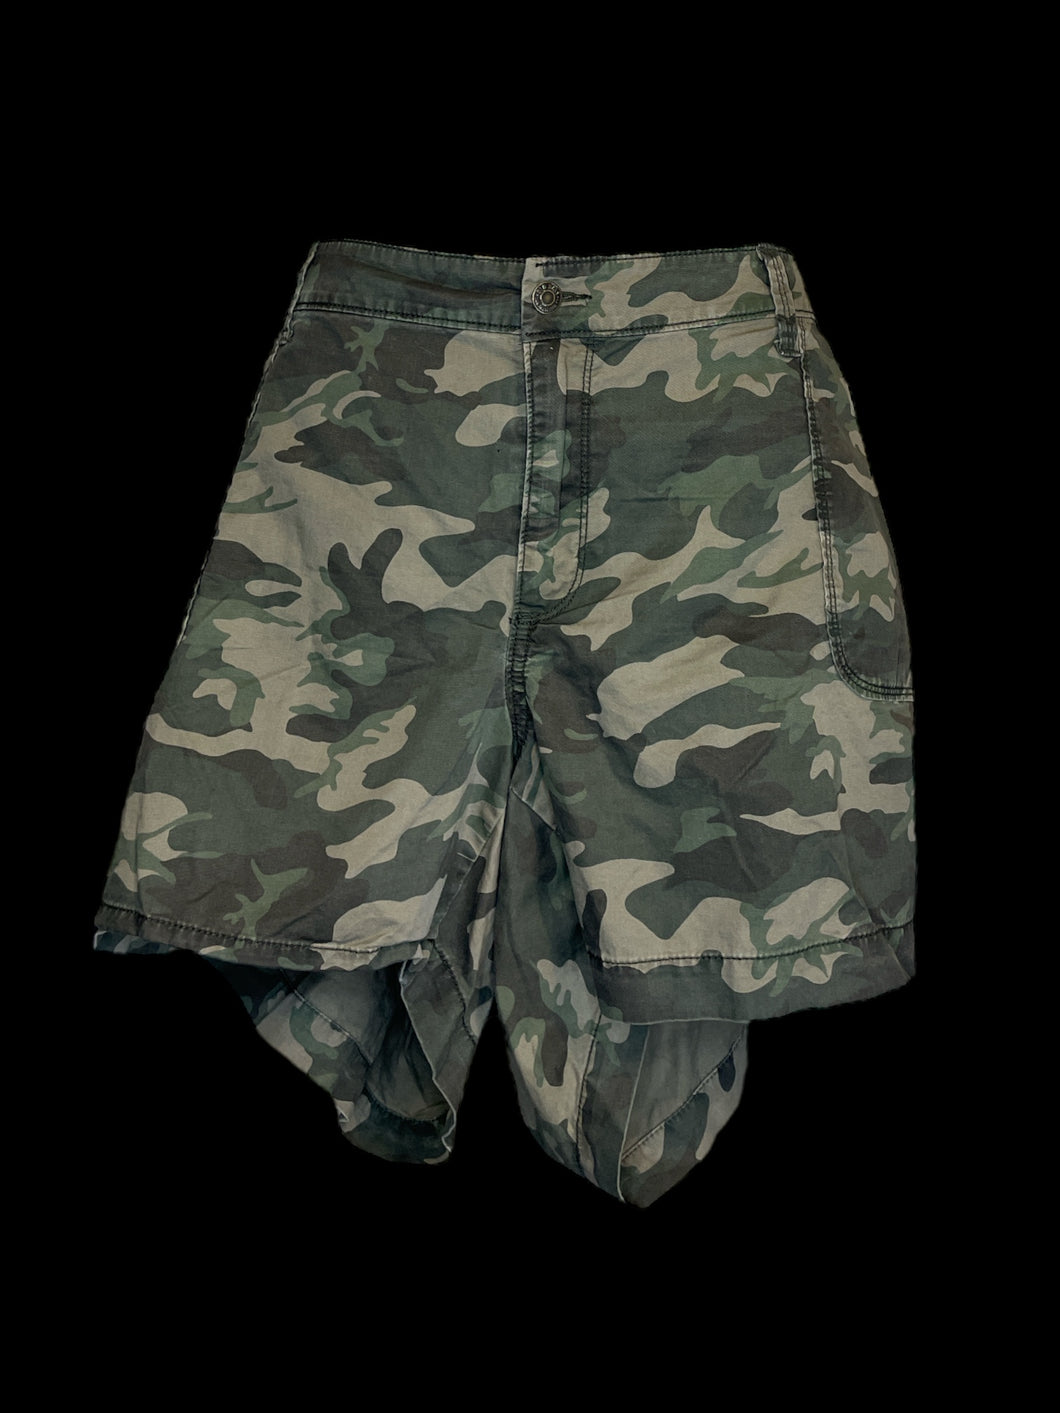 3X Camo shorts w/ zipper detail, pockets, belt loops, & zipper/button closure